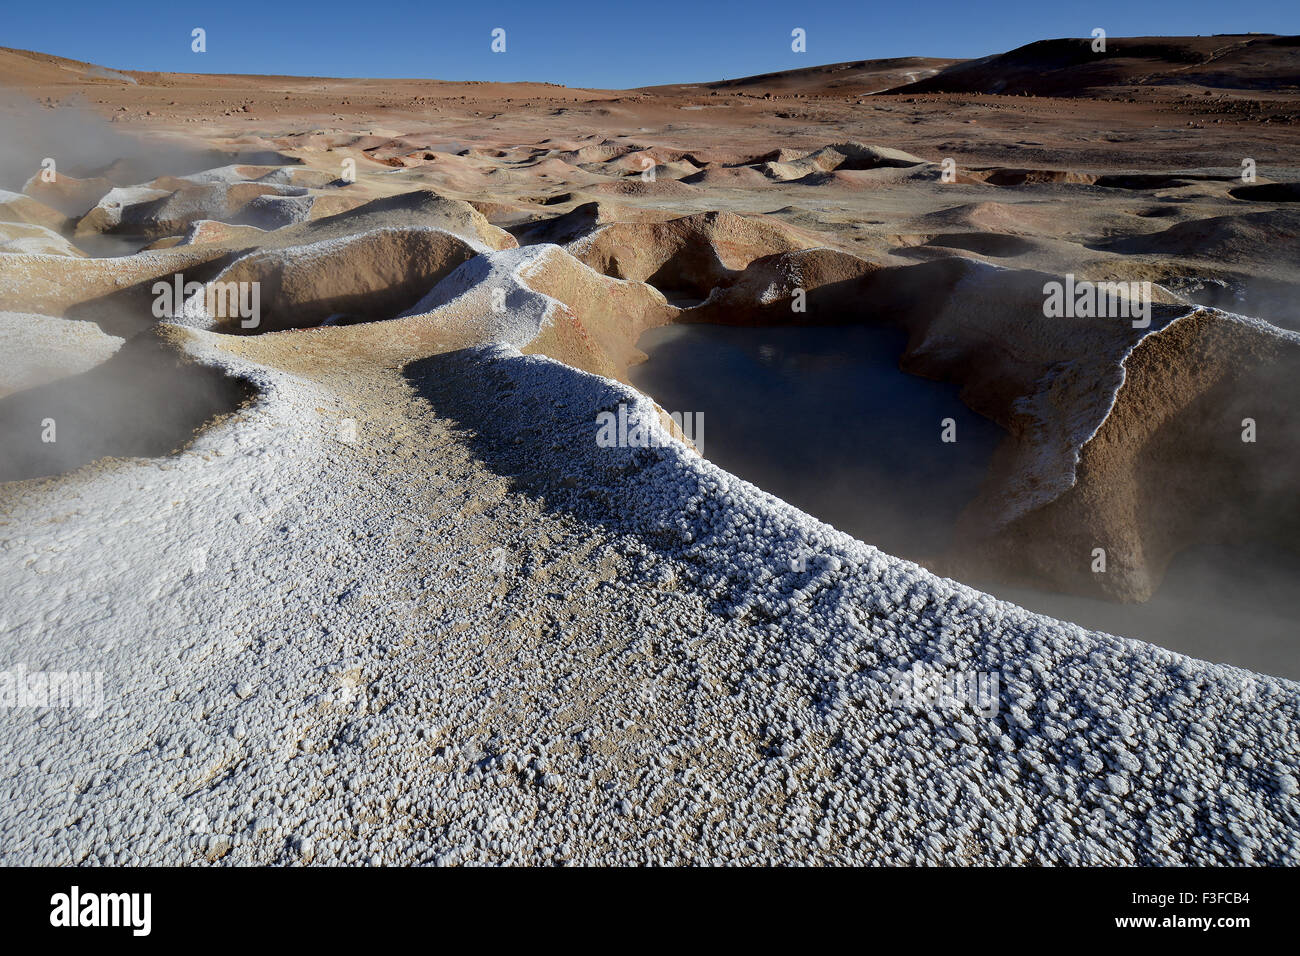 Geysire mit Wasserdampf, die am Rand in Eisblumen eingefroren wurden, Sol de Mañana Geothermiefeld, Altiplano, Bolivien Stockfoto